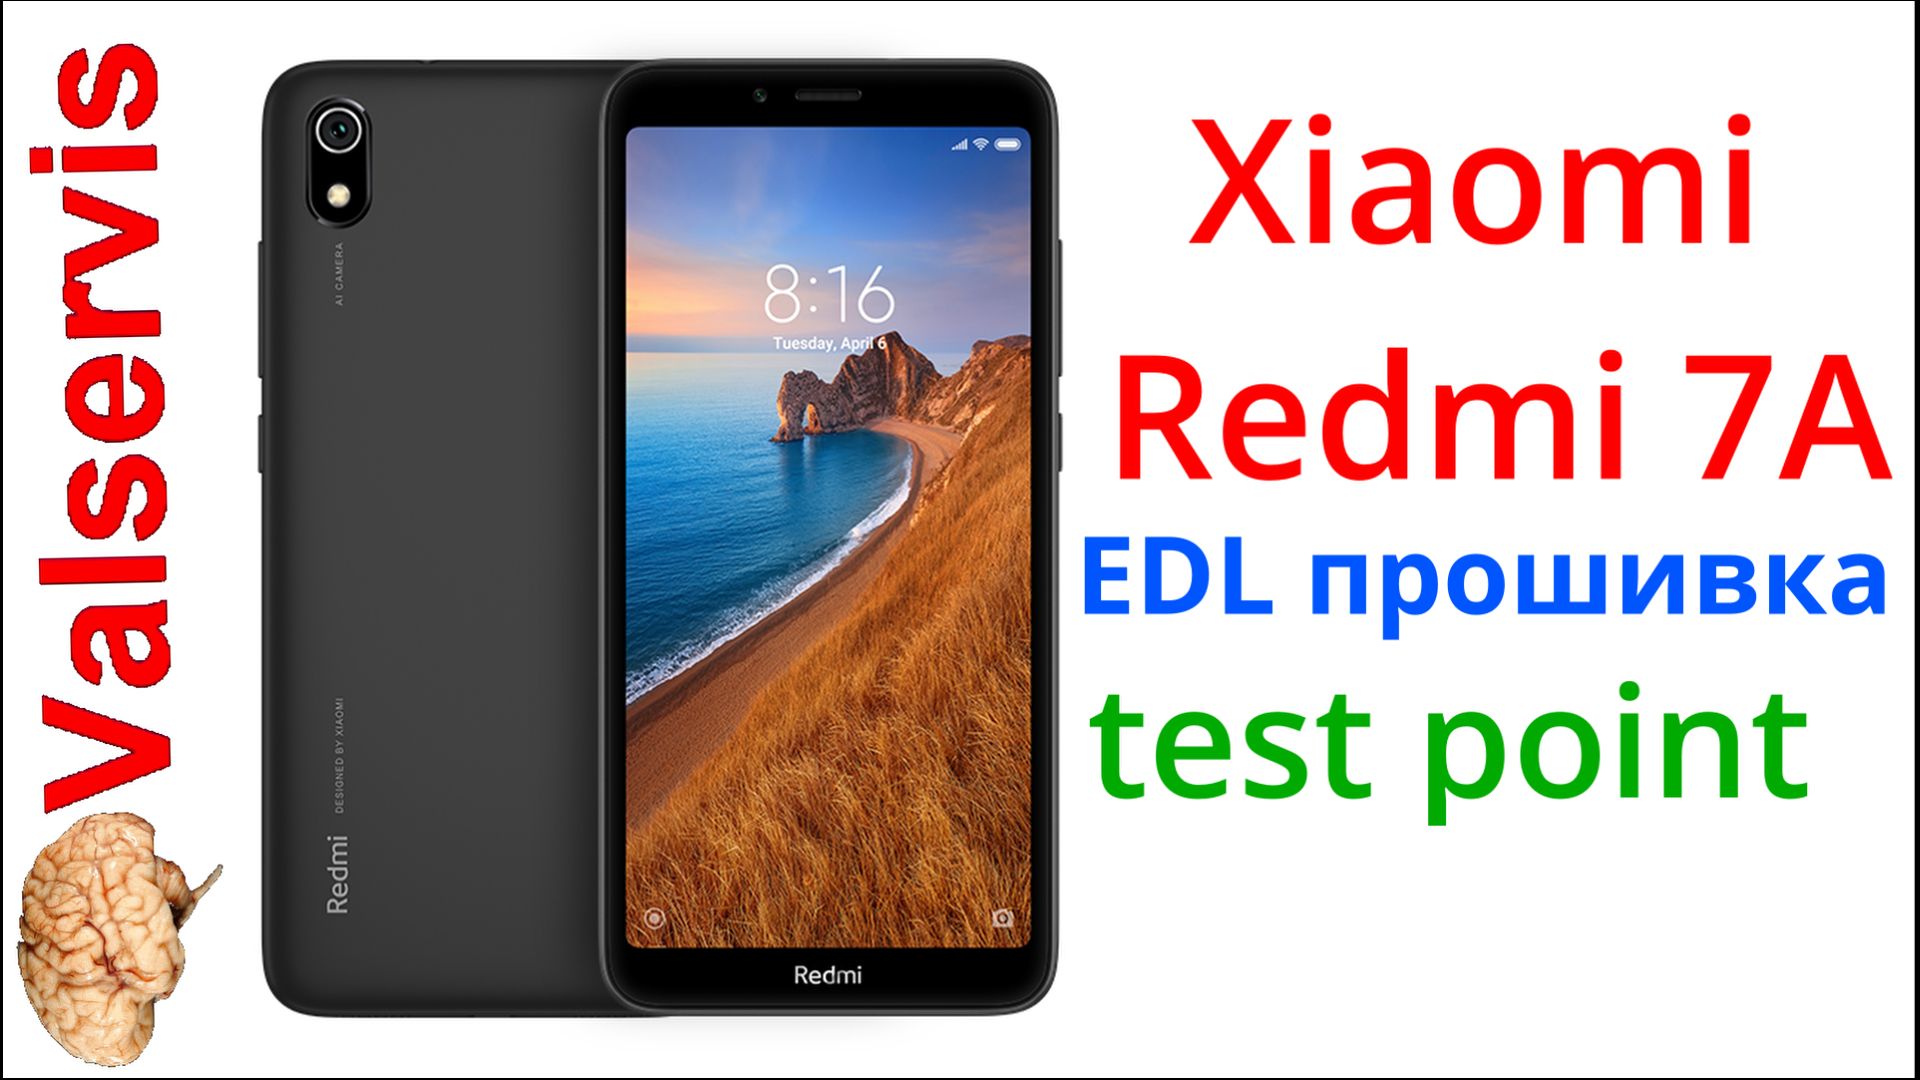 Прошивка Xiaomi. M1903c3egredmi 7a EDL. Redmi 7a EDL testpoint. Redmi 7a Прошивка.